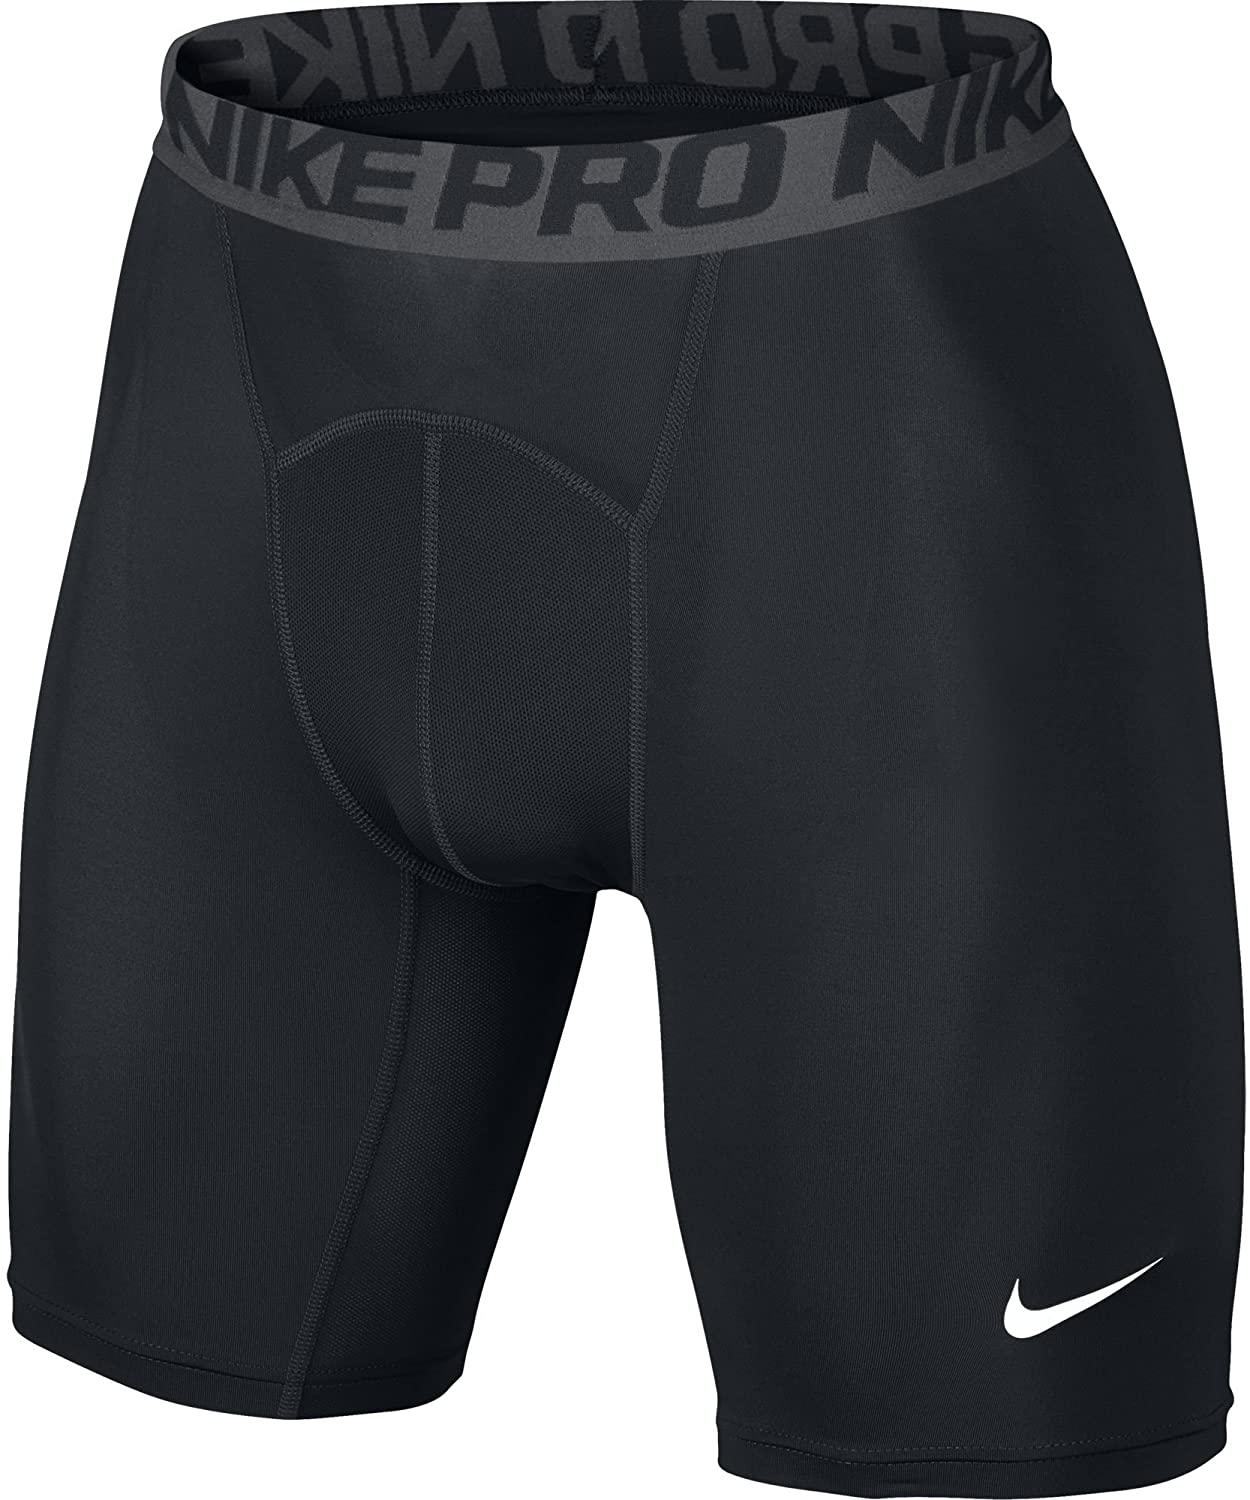 nike pro shorts men's